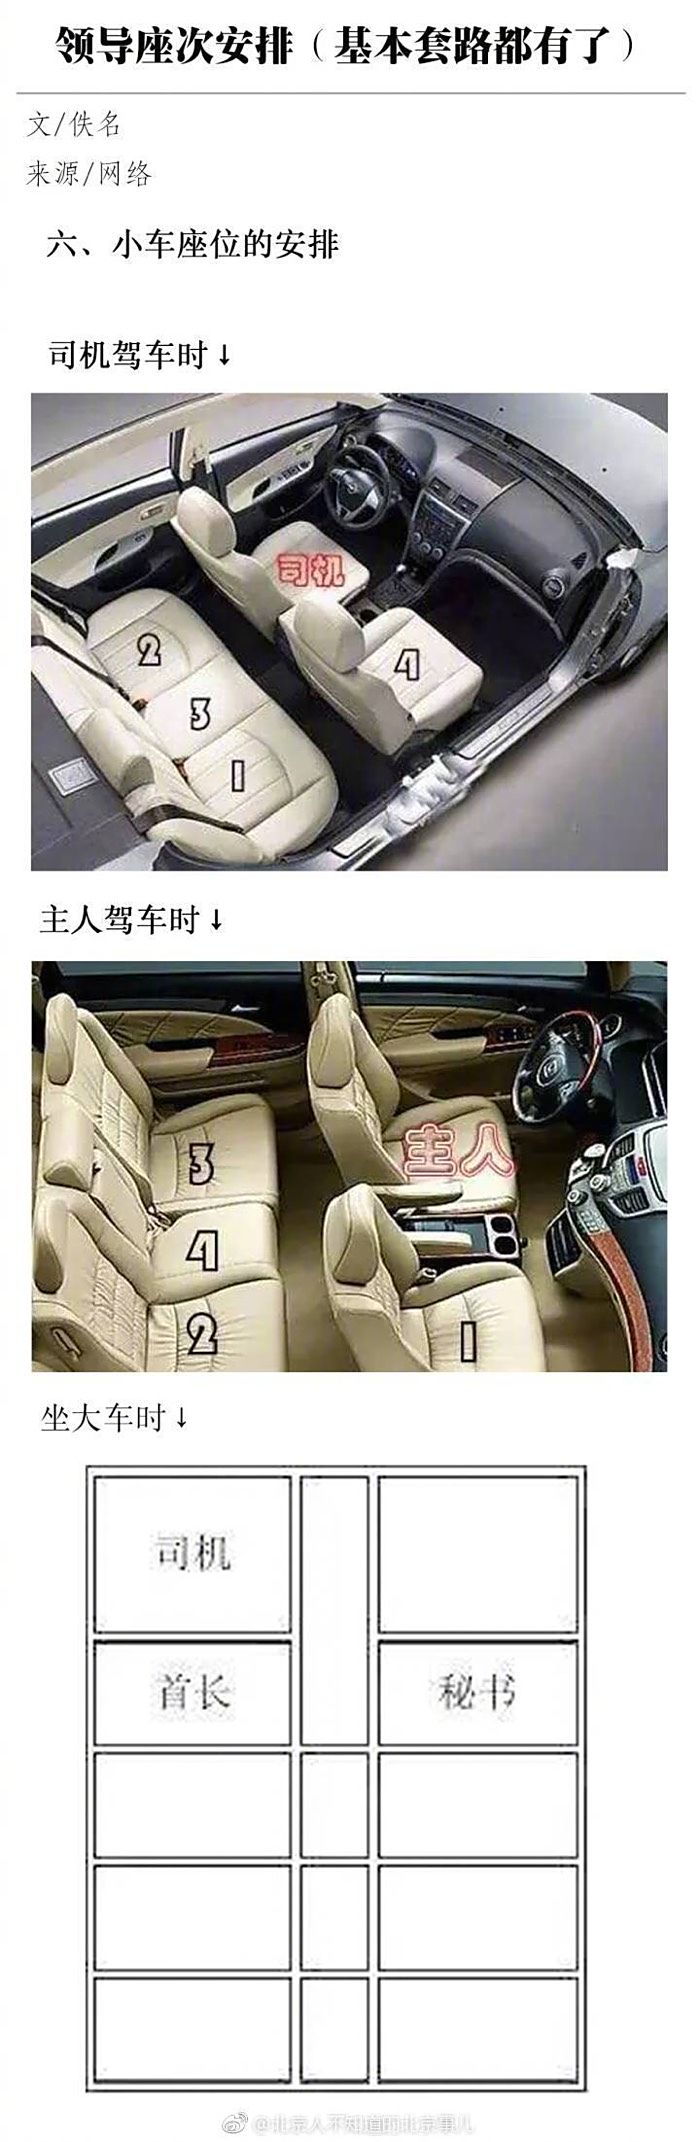 小汽车座位安排礼仪图片